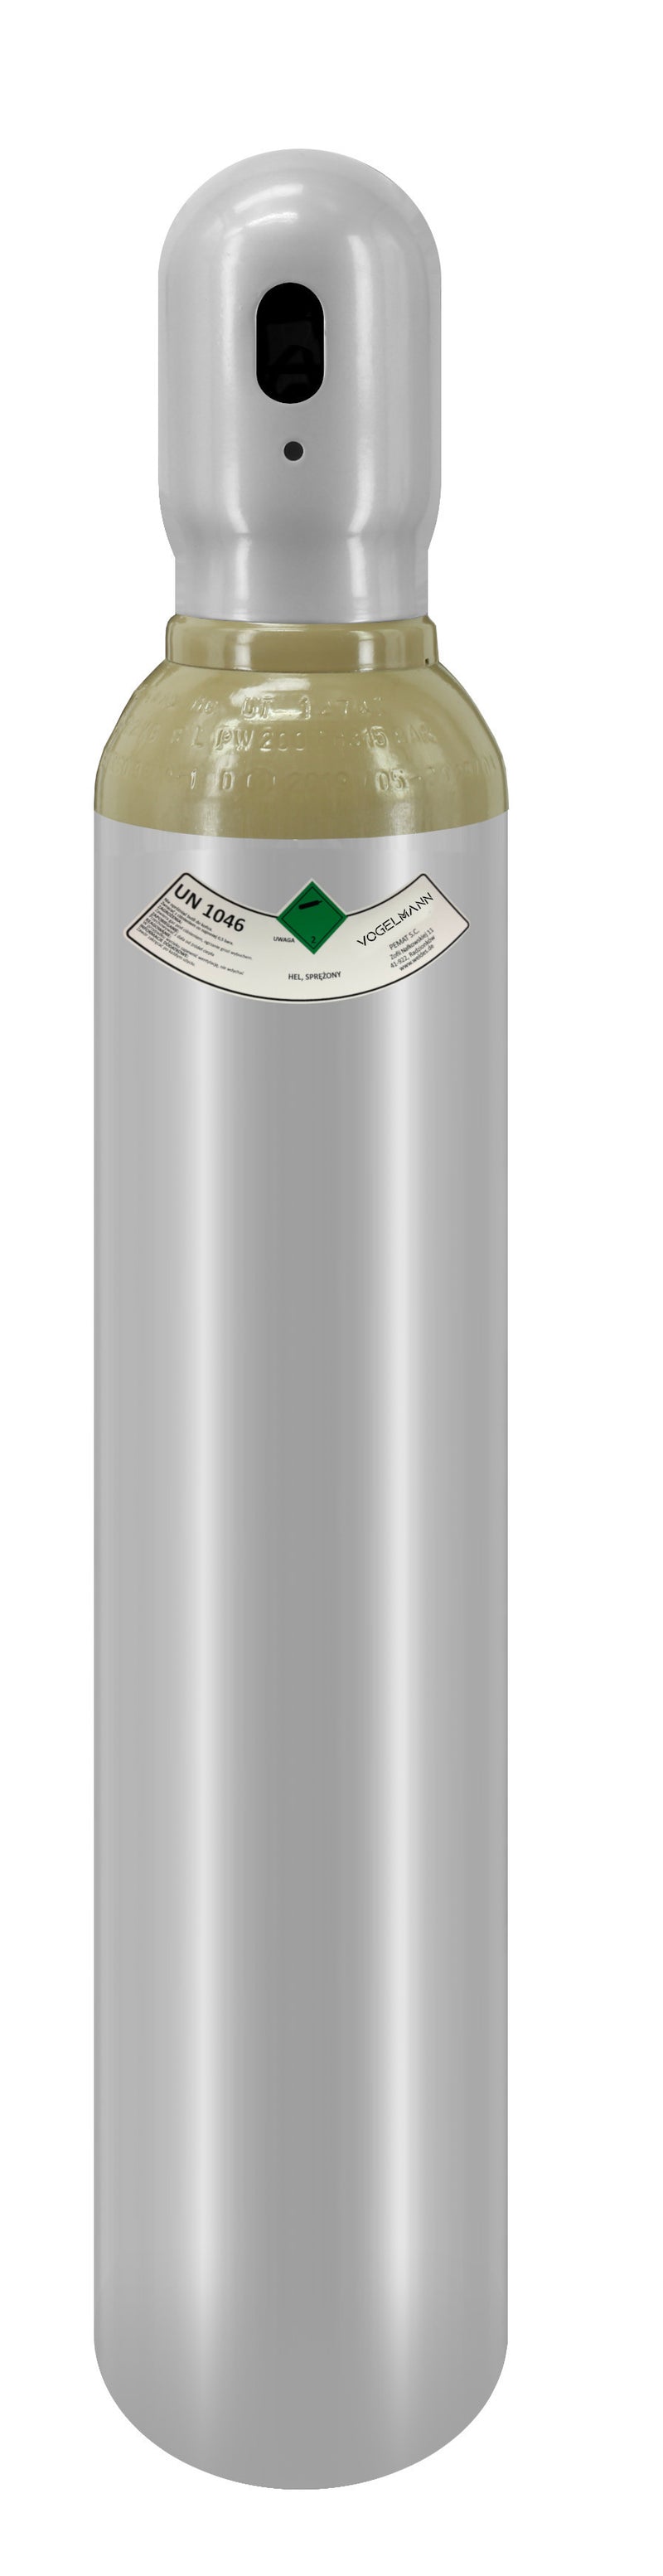 Helium full gas cylinder 8L 1,5m3 Vogelmann